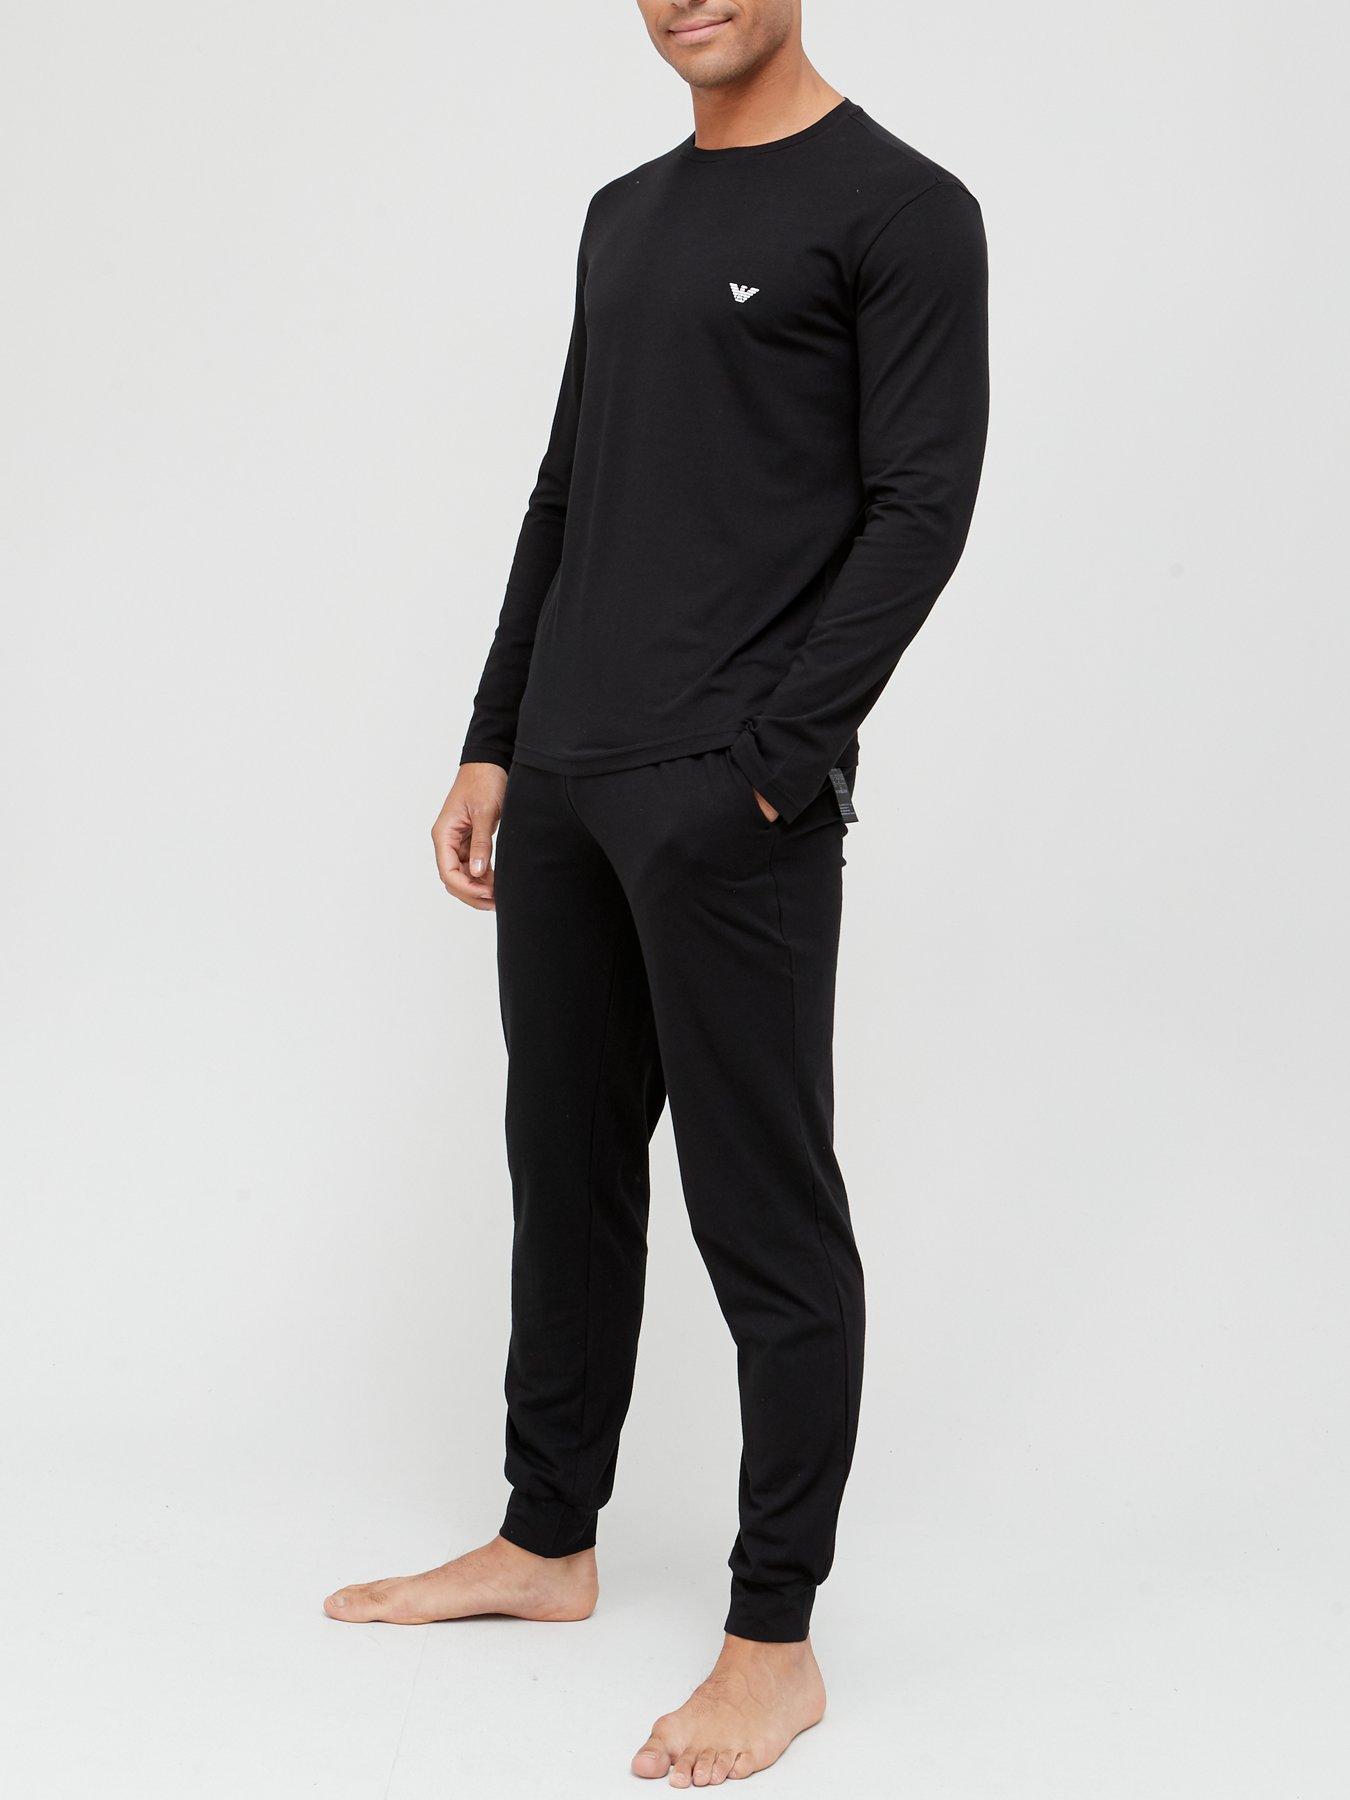 Nightwear & Loungewear Endurance Lounge T-Shirt And Pants Set - Black